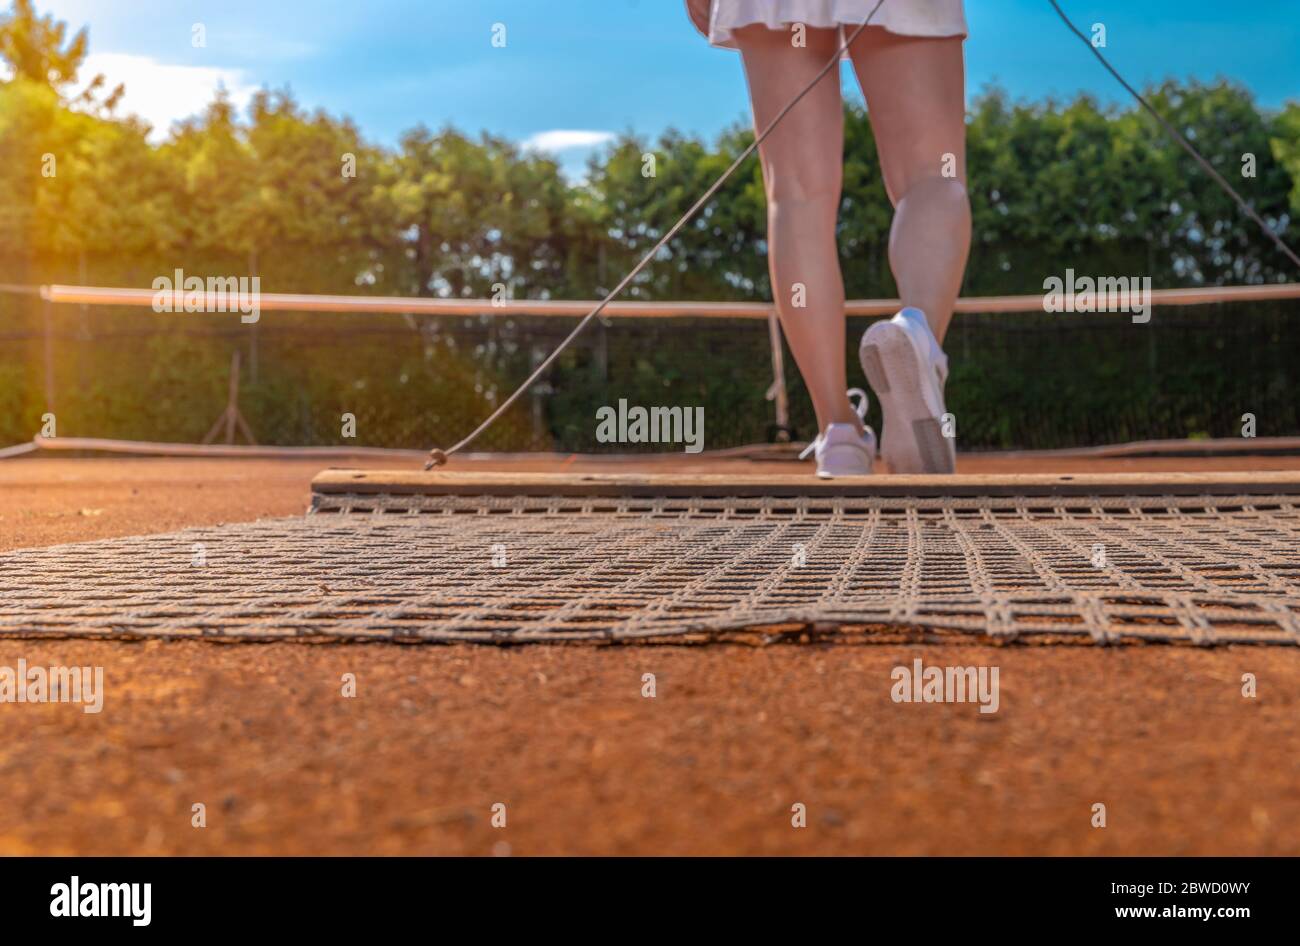 une argile orange sur un court de tennis extérieur. espace pour copier Banque D'Images